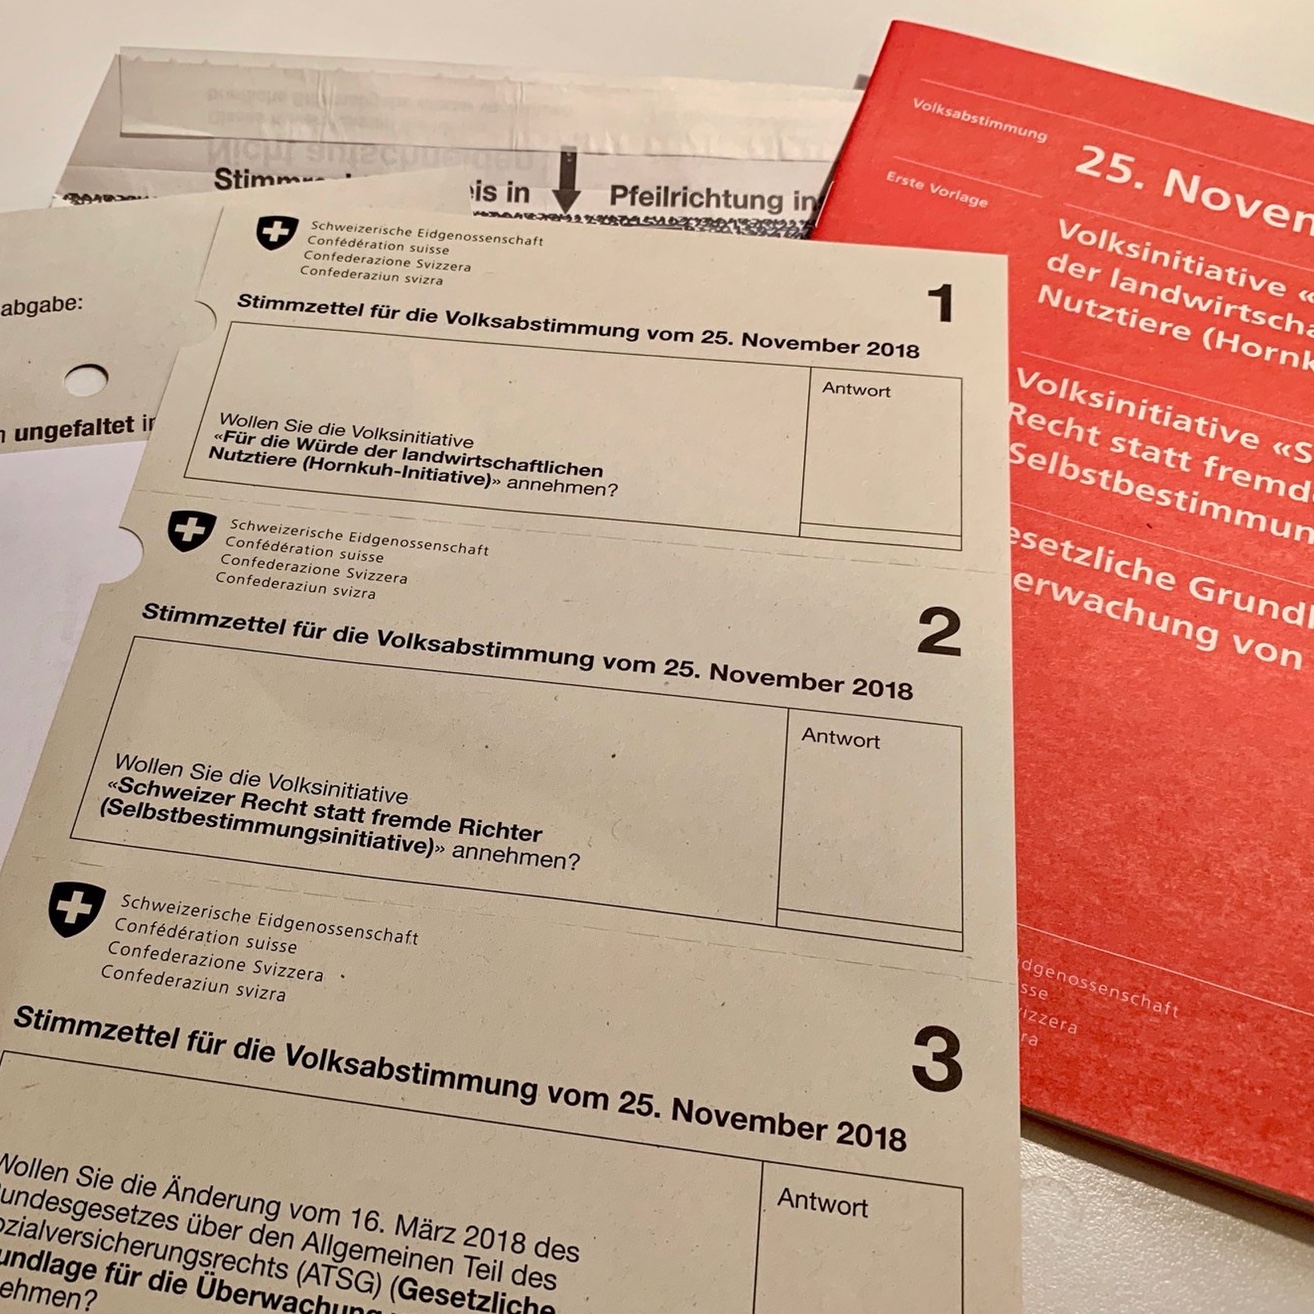 Foto: Stimmunterlagen für die schweizerische Volksabstimmung vom 25. November 2018